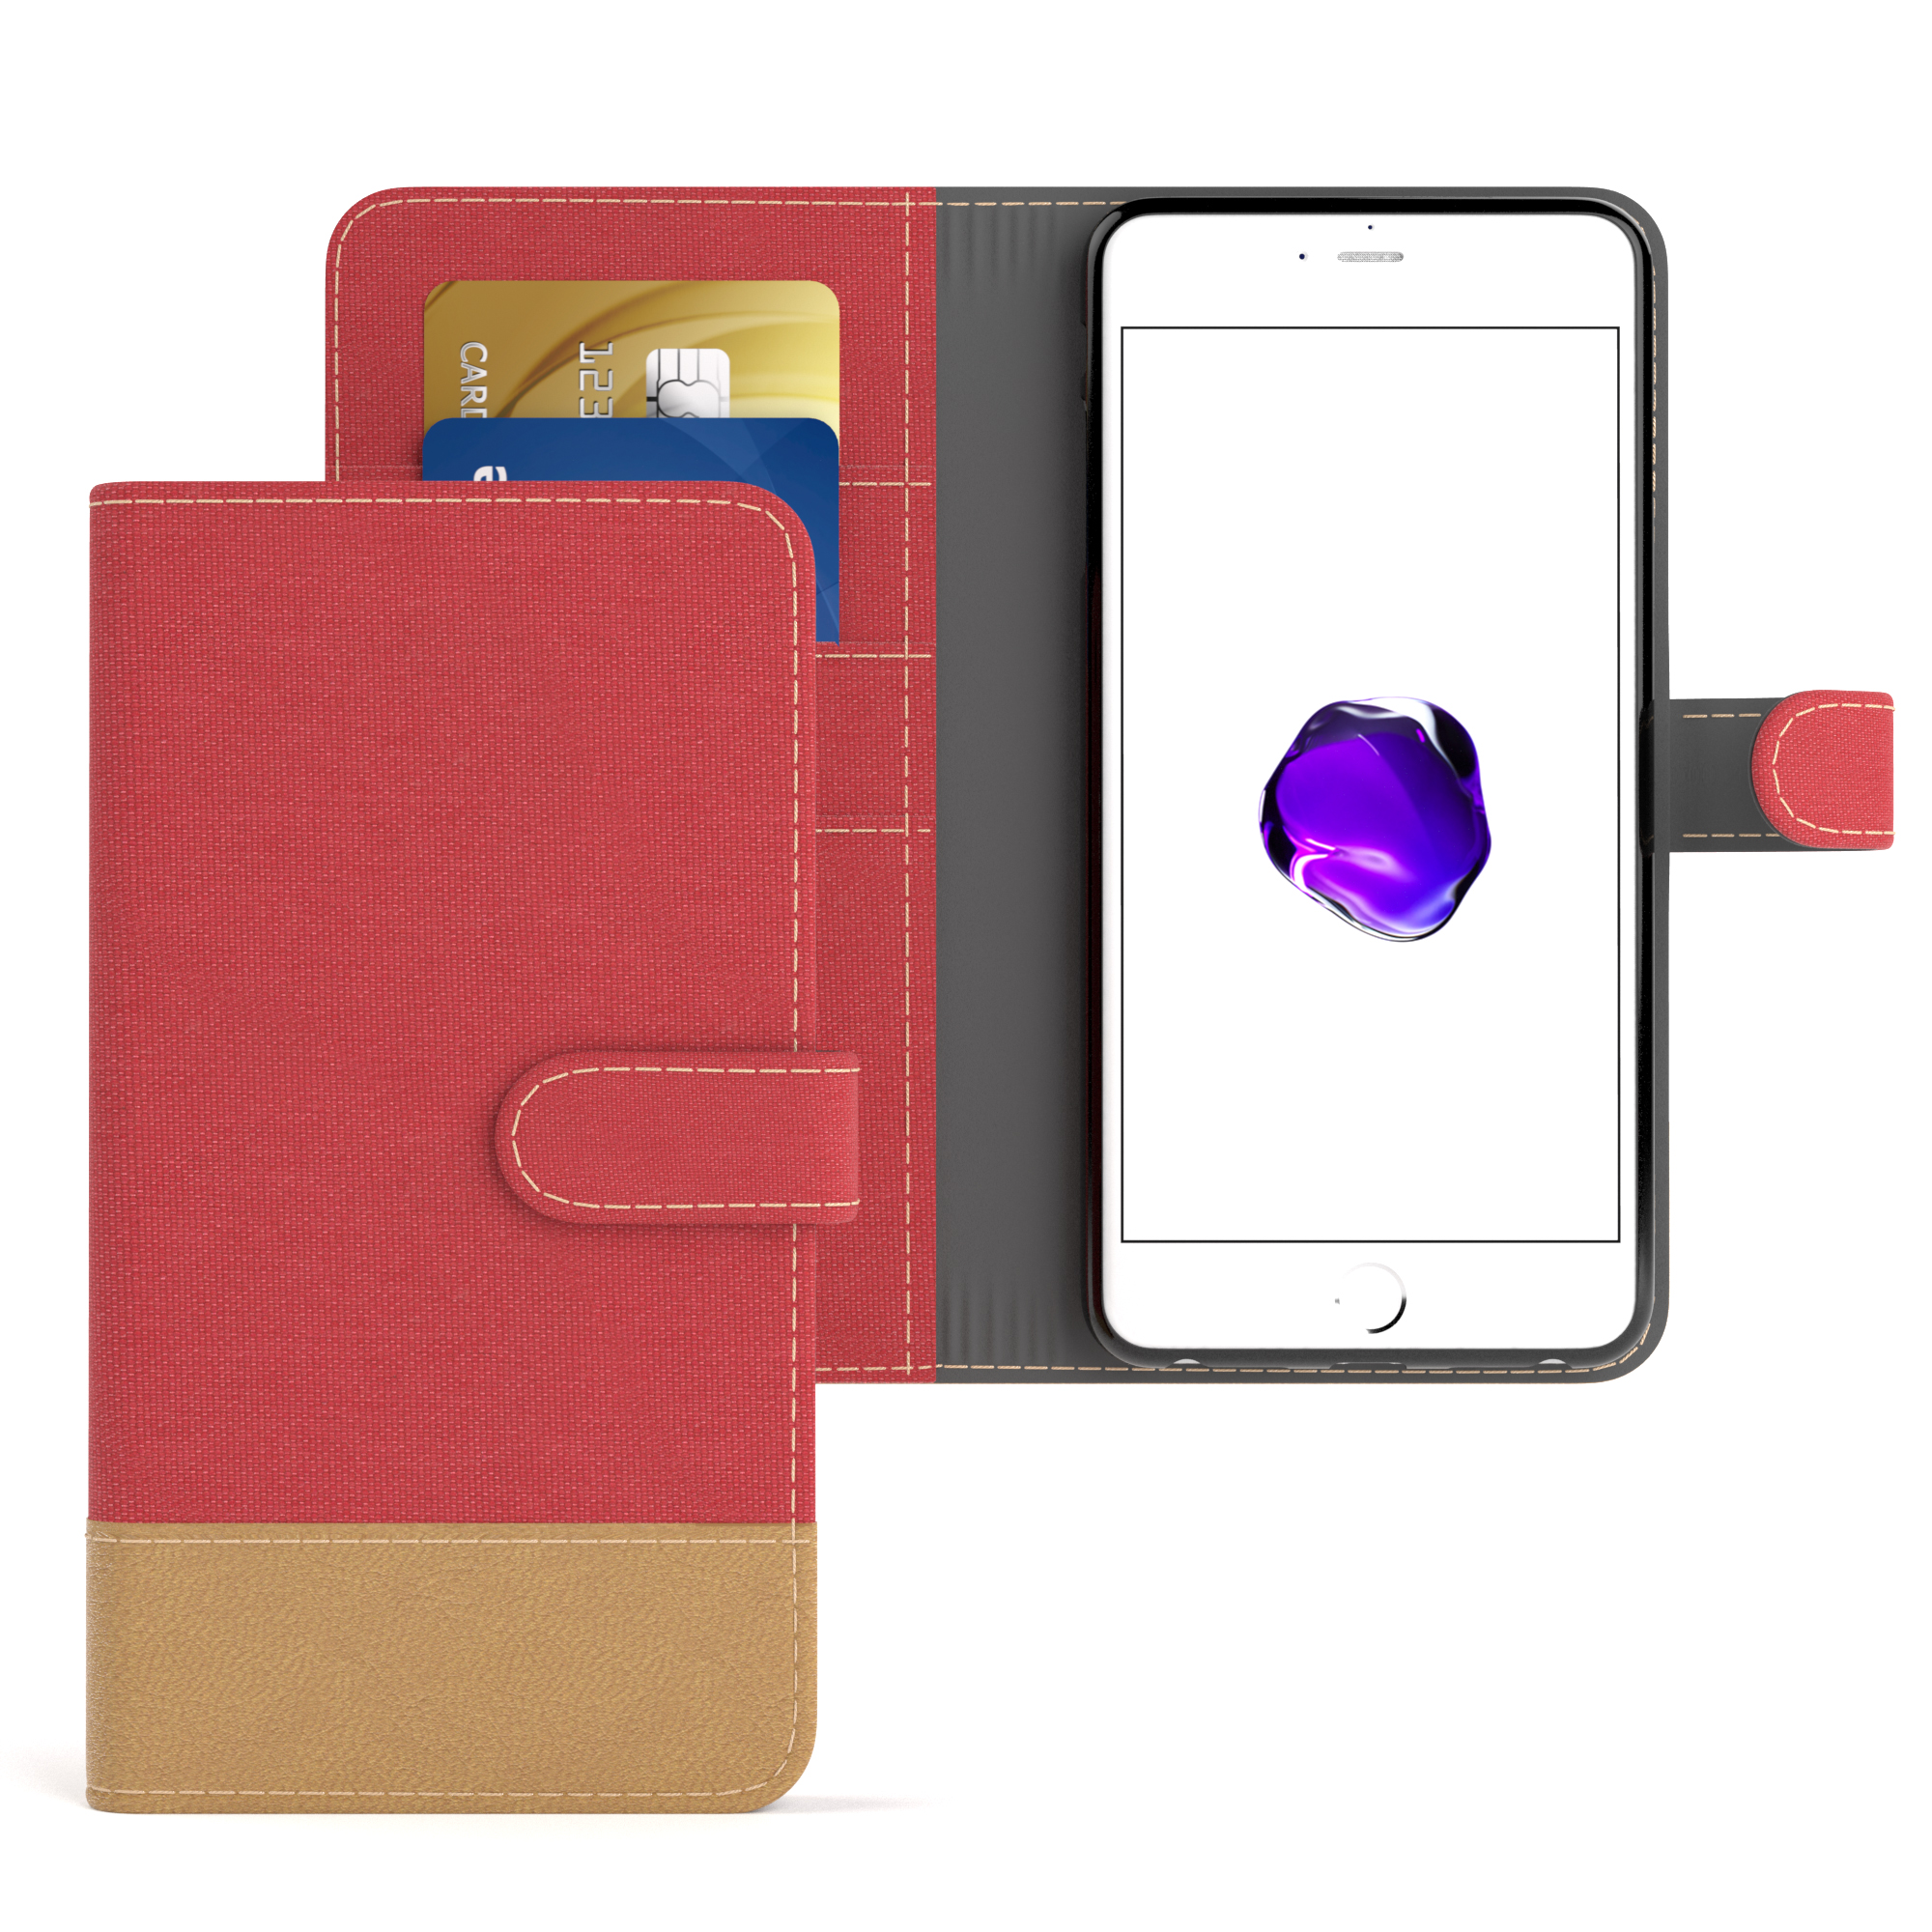 EAZY CASE Bookstyle / Plus mit iPhone Rot 8 Plus, Jeans Apple, Kartenfach, Bookcover, Klapphülle 7